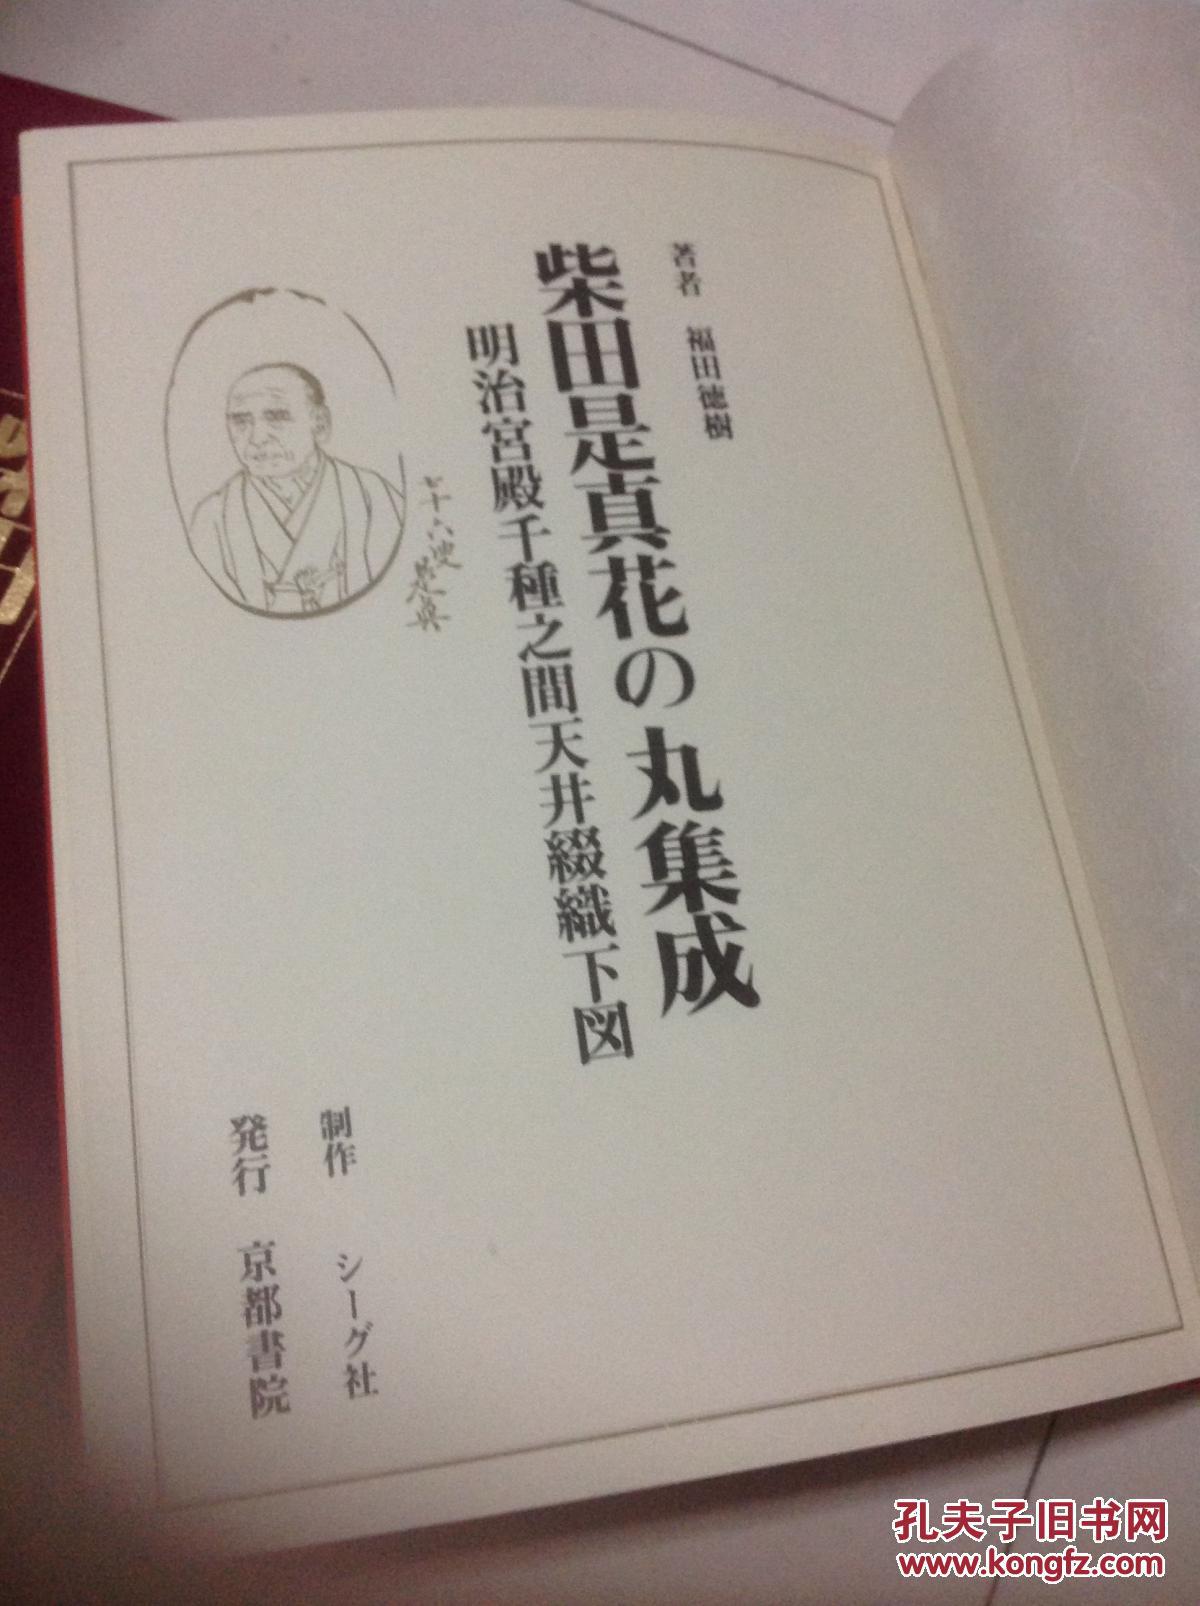 的图案,现货在杭州,定价四万日元_京都书院